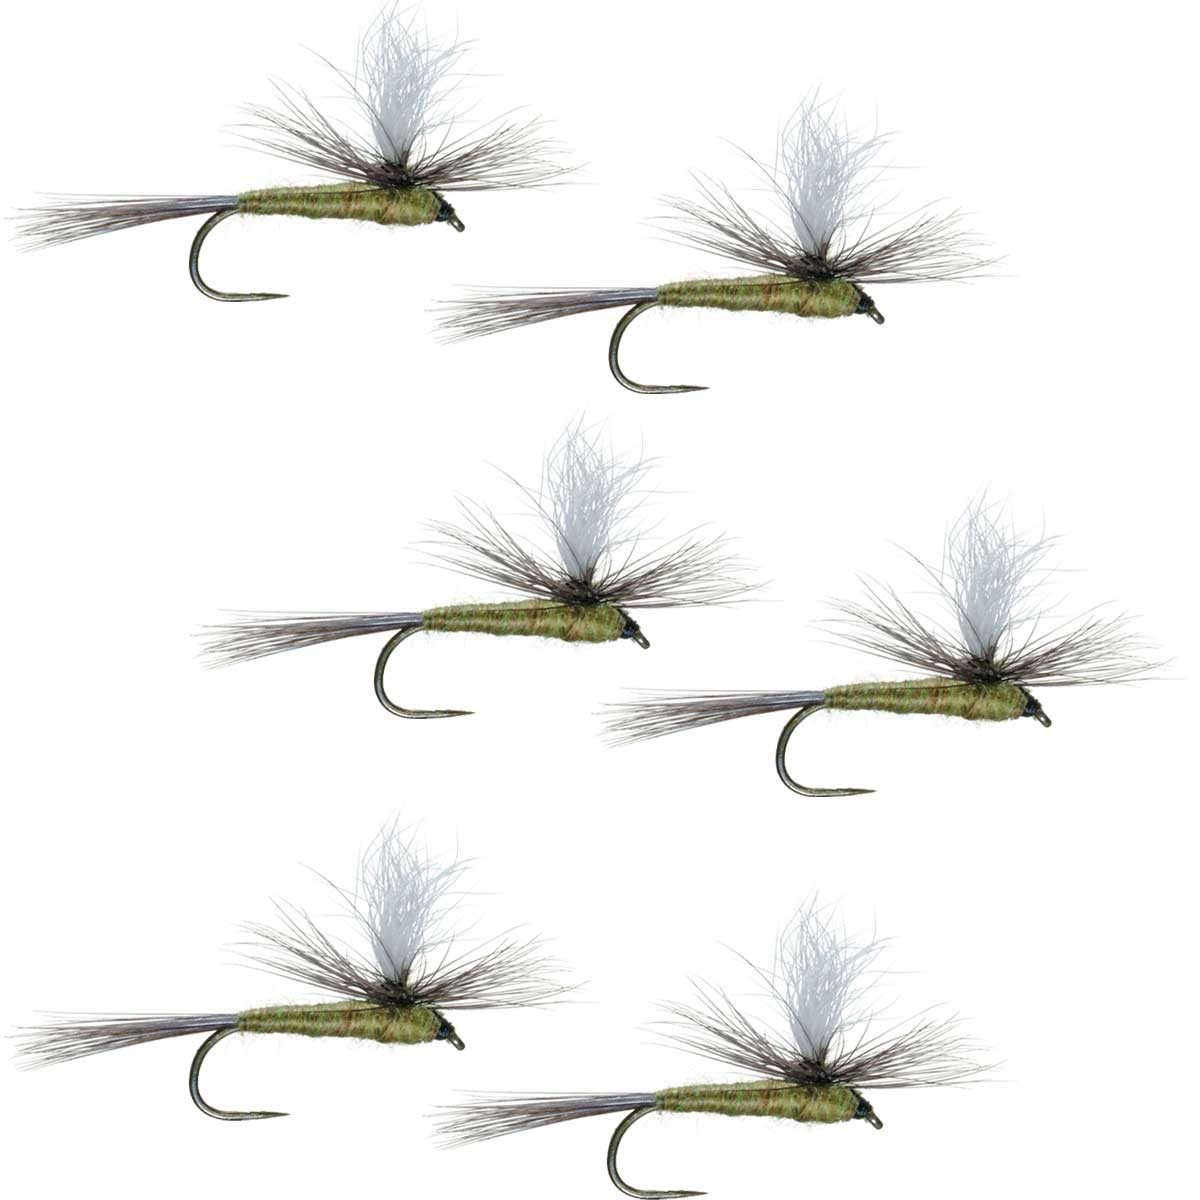 Moscas para pesca con mosca seca para trucha clásica BWO, paracaídas sin rebabas, con alas azules, color oliva, juego de 6 moscas, tamaño 20